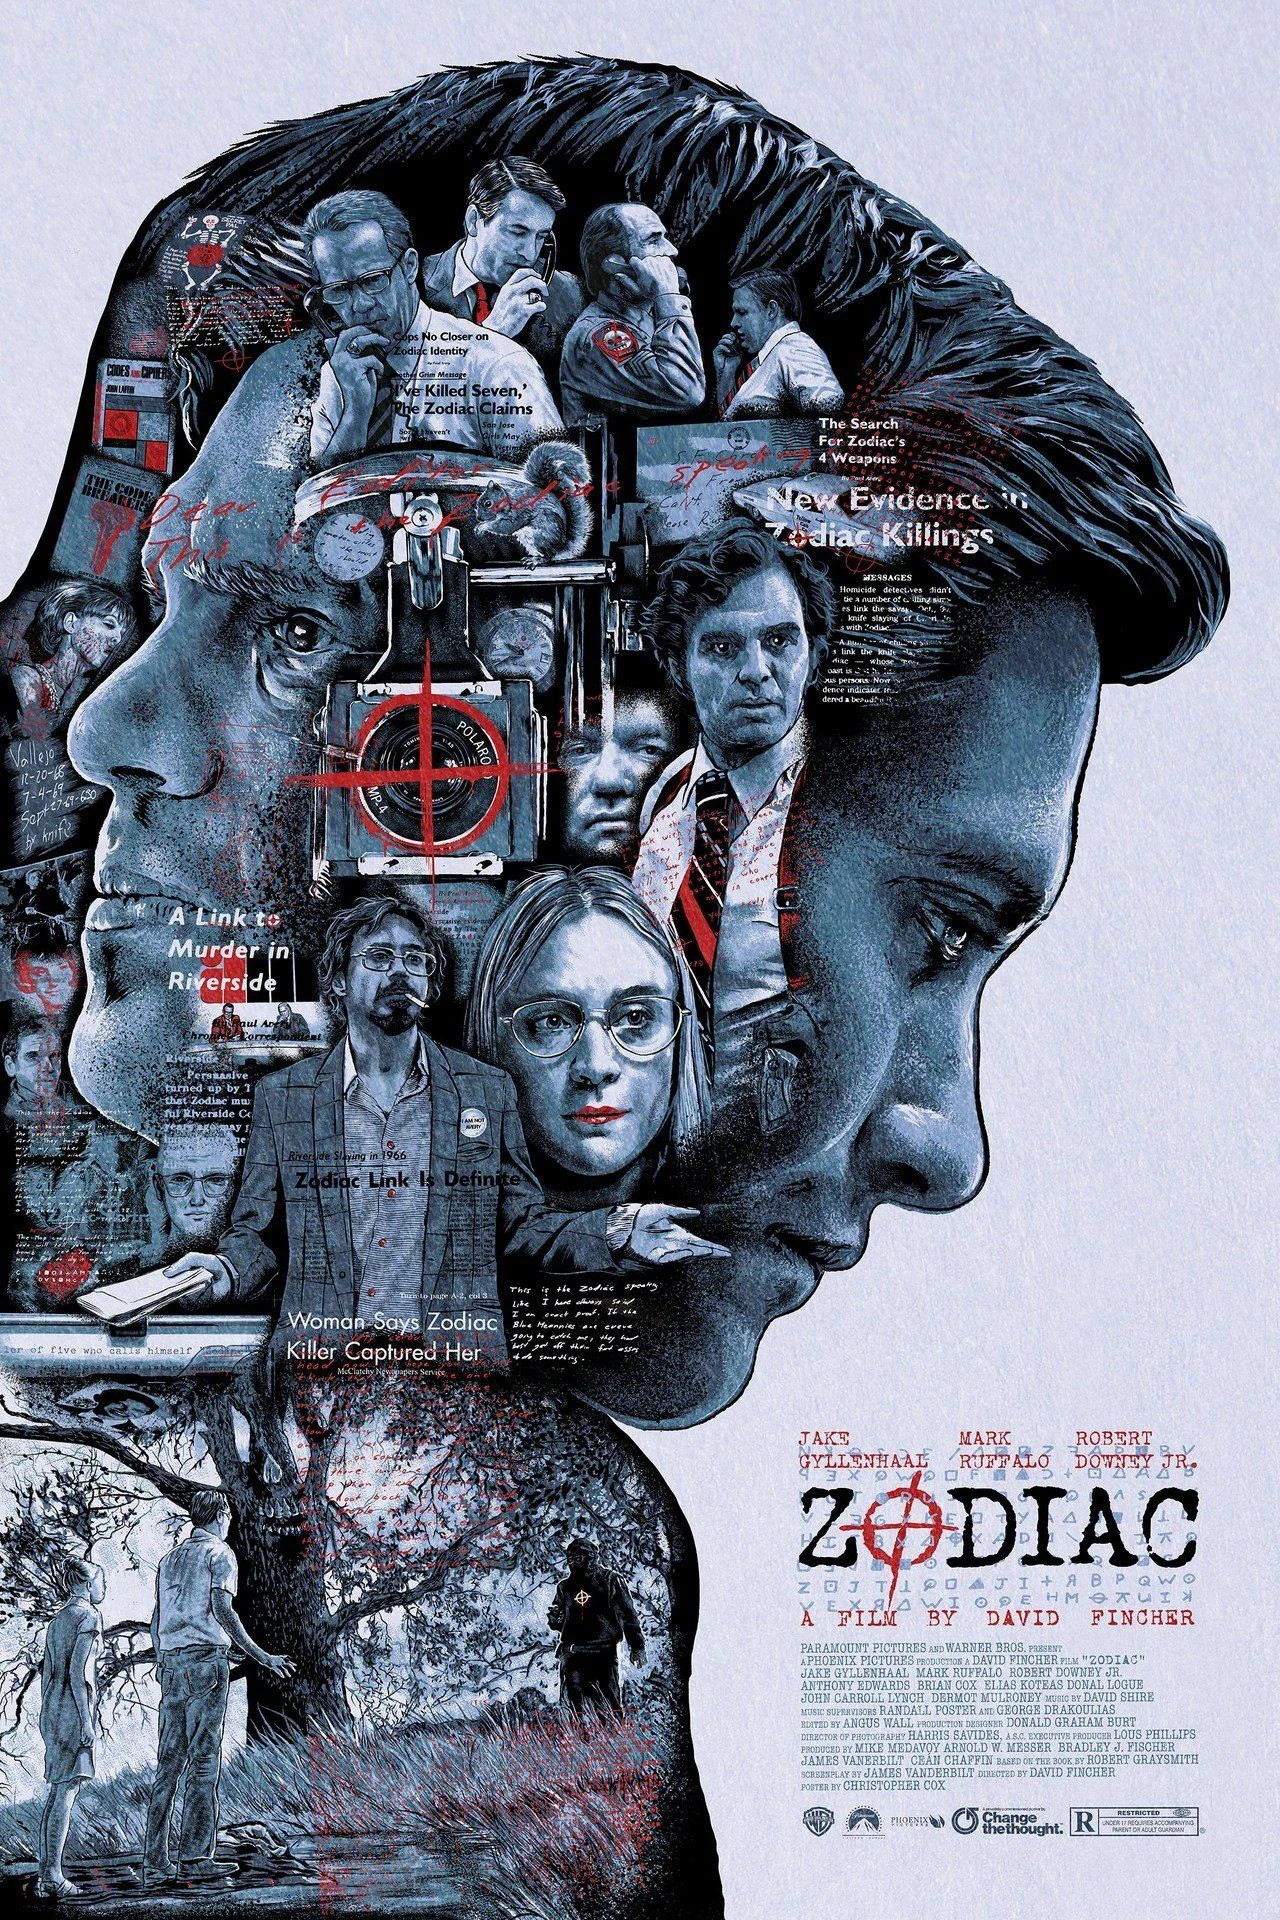 Zodiac - 20 Movies